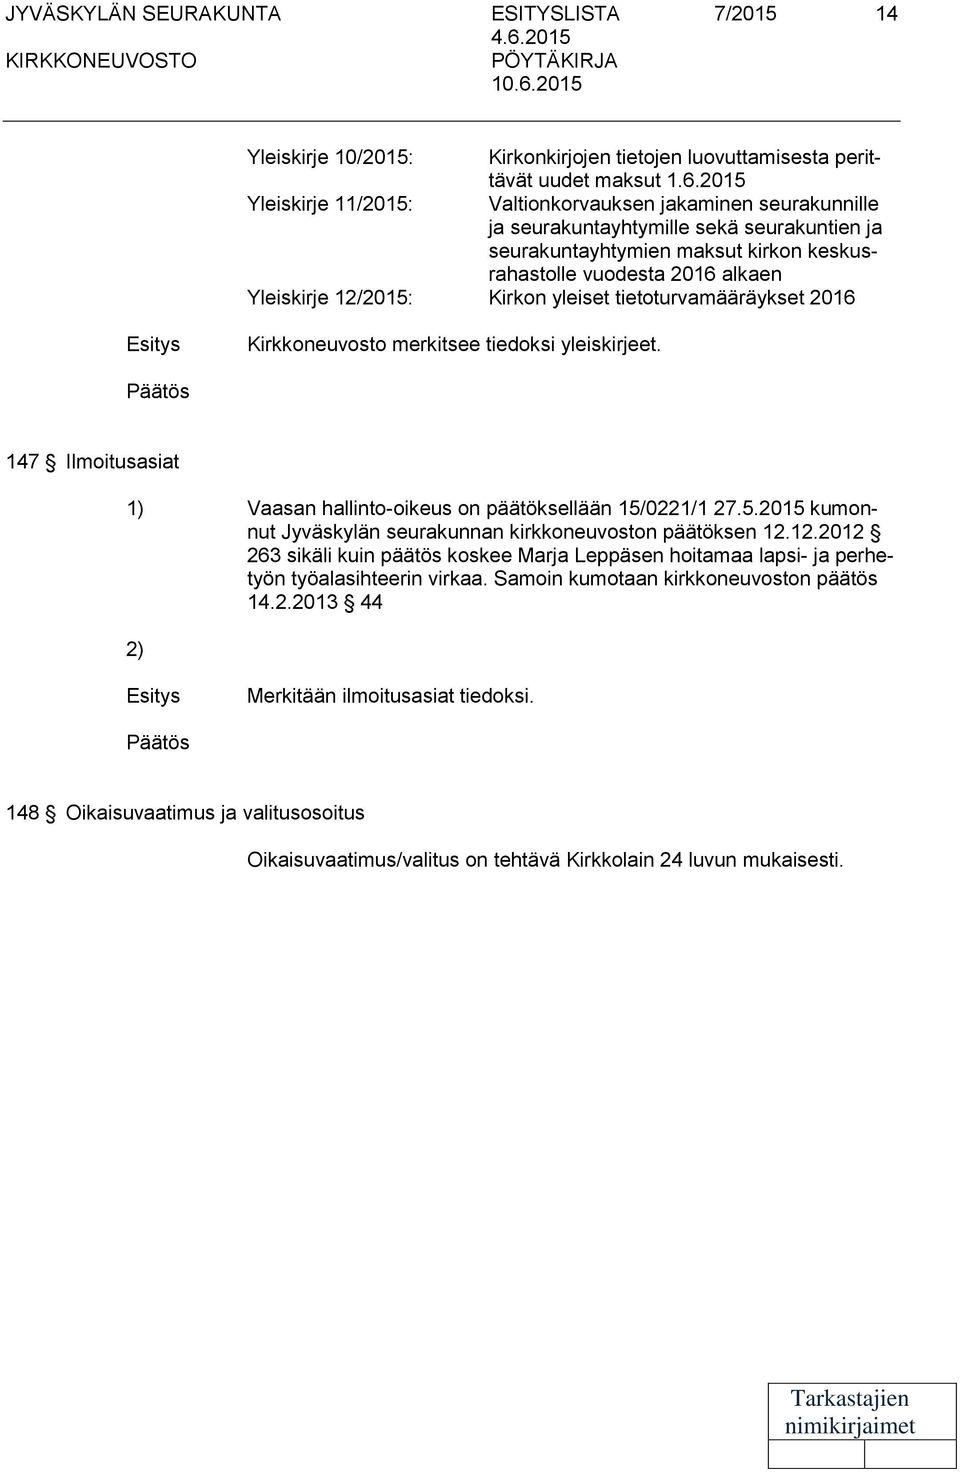 12/2015: Kirkon yleiset tietoturvamääräykset 2016 Kirkkoneuvosto merkitsee tiedoksi yleiskirjeet. 147 Ilmoitusasiat 1) Vaasan hallinto-oikeus on päätöksellään 15/0221/1 27.5.2015 kumonnut Jyväskylän seurakunnan kirkkoneuvoston päätöksen 12.